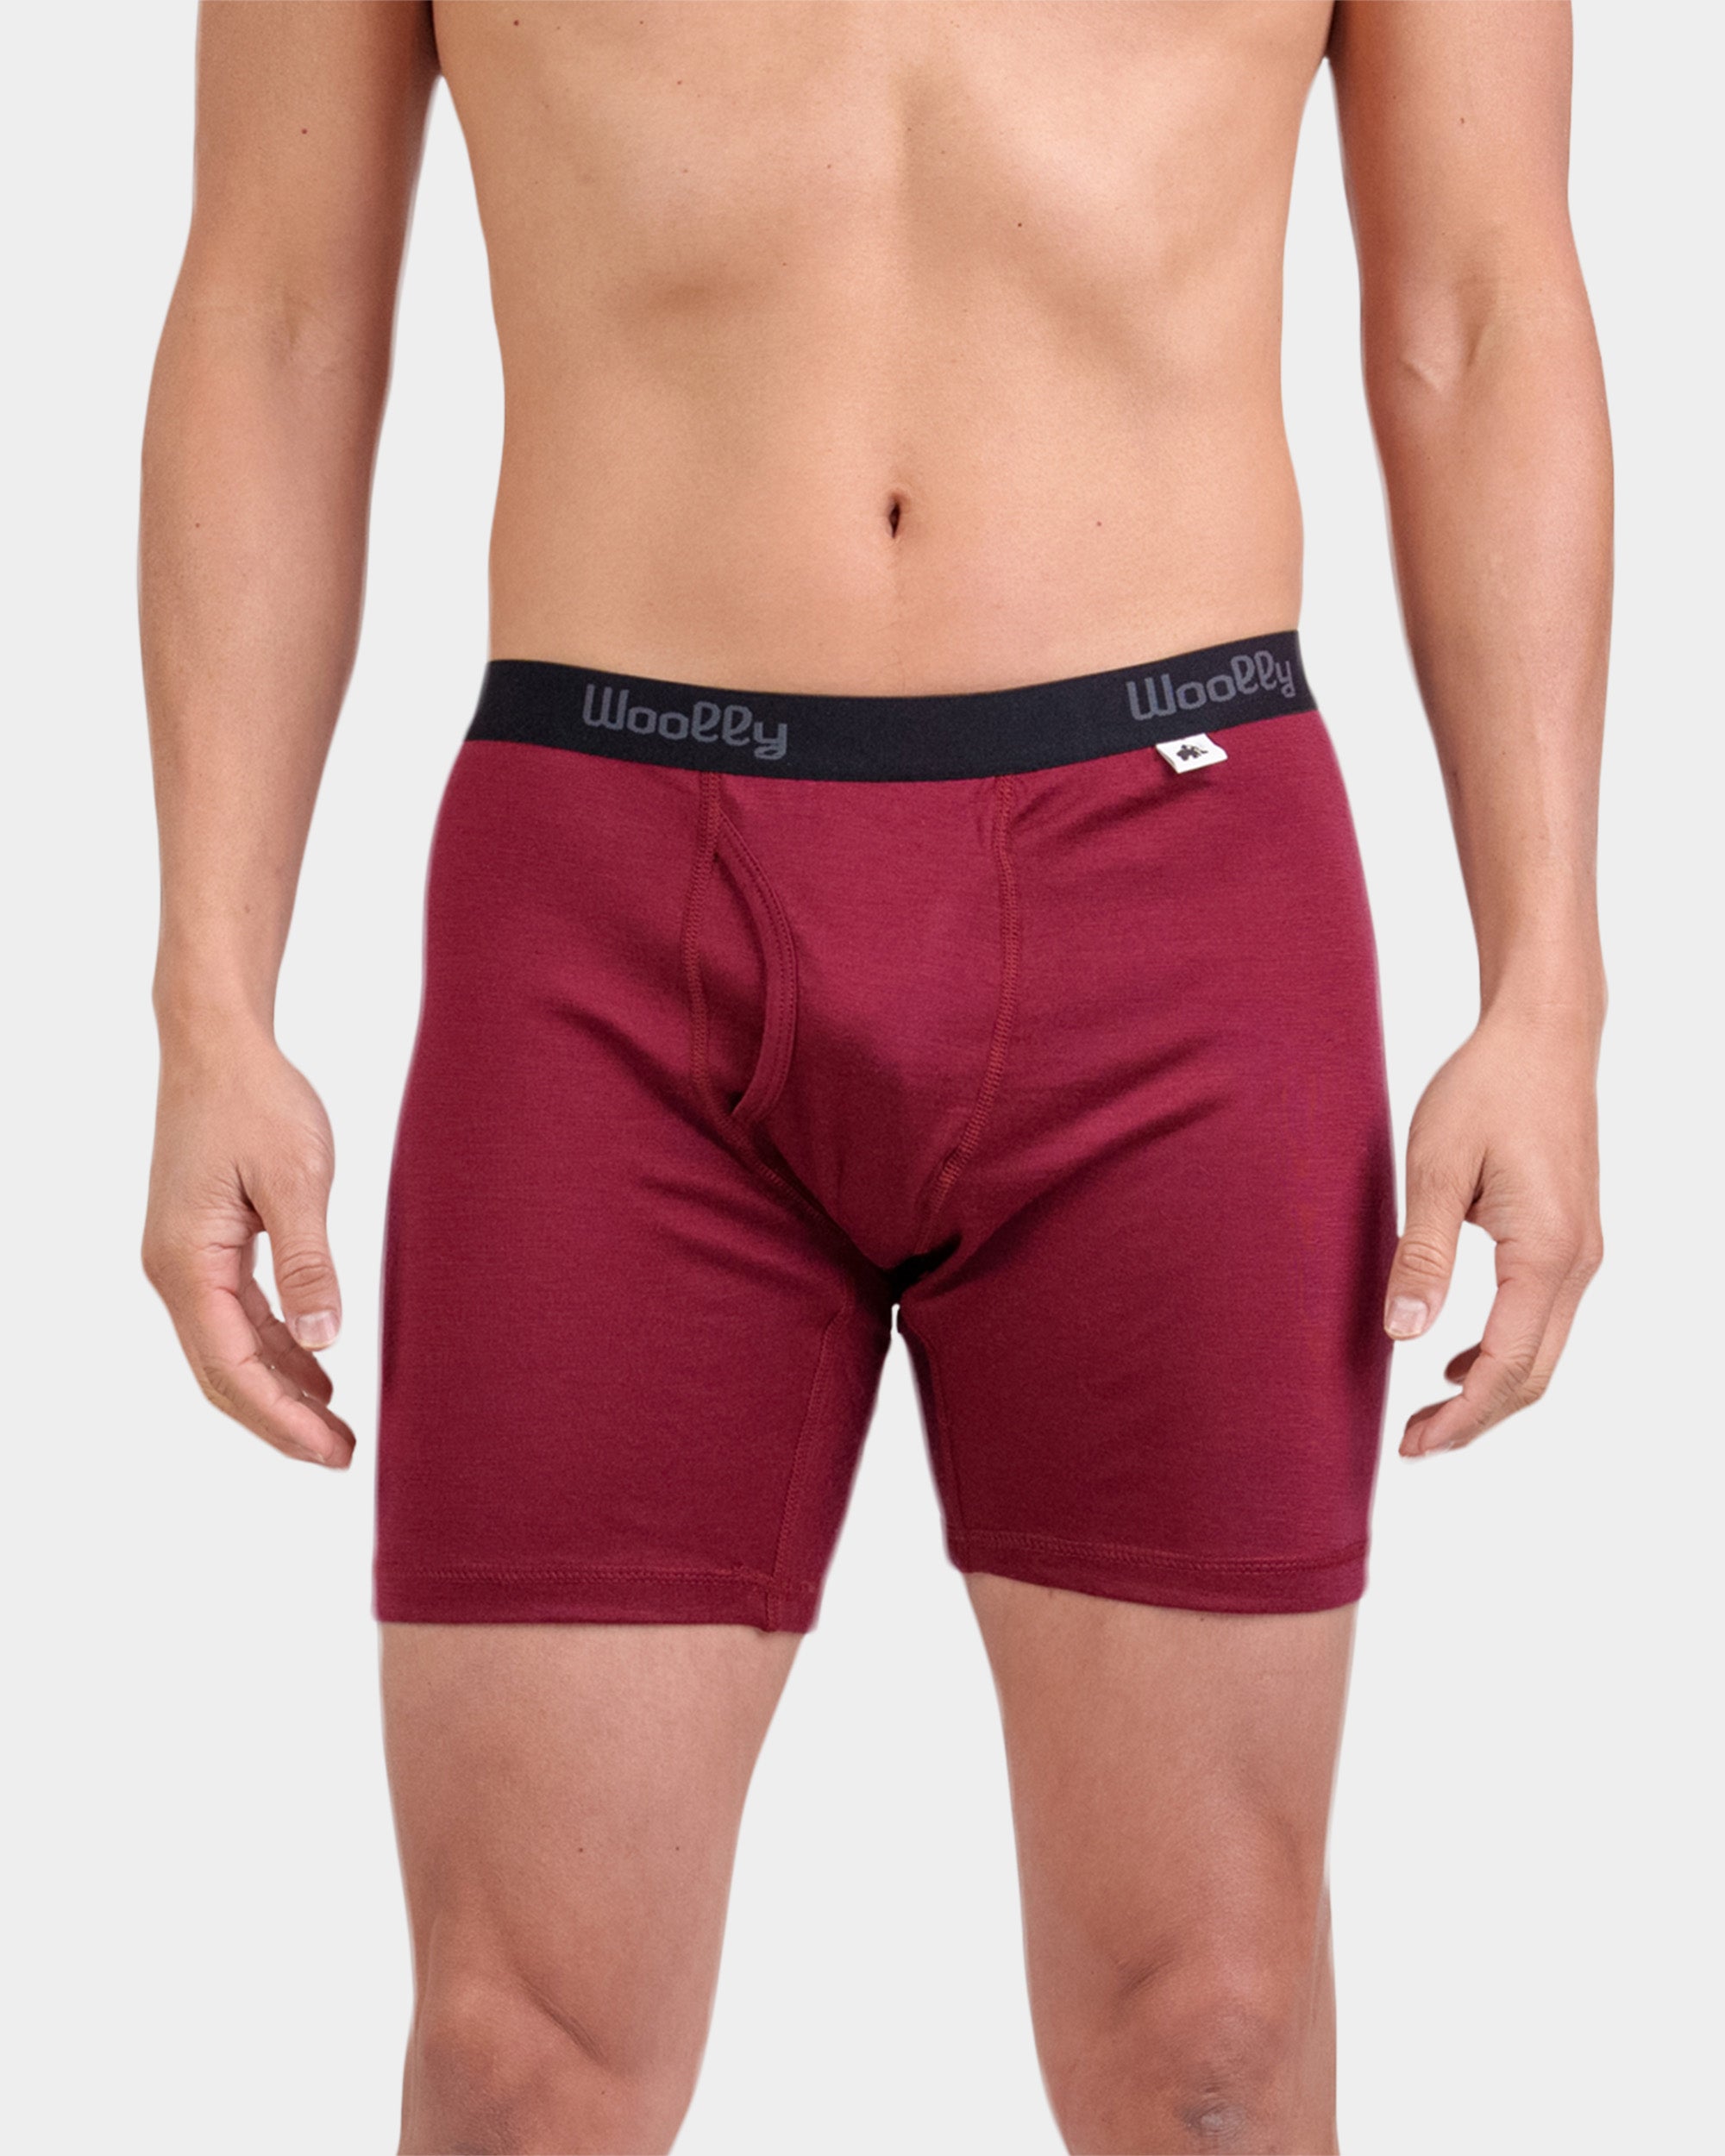 V Shape Underwear Mens Flex Natural Hip Brief Underwear Men Sexy